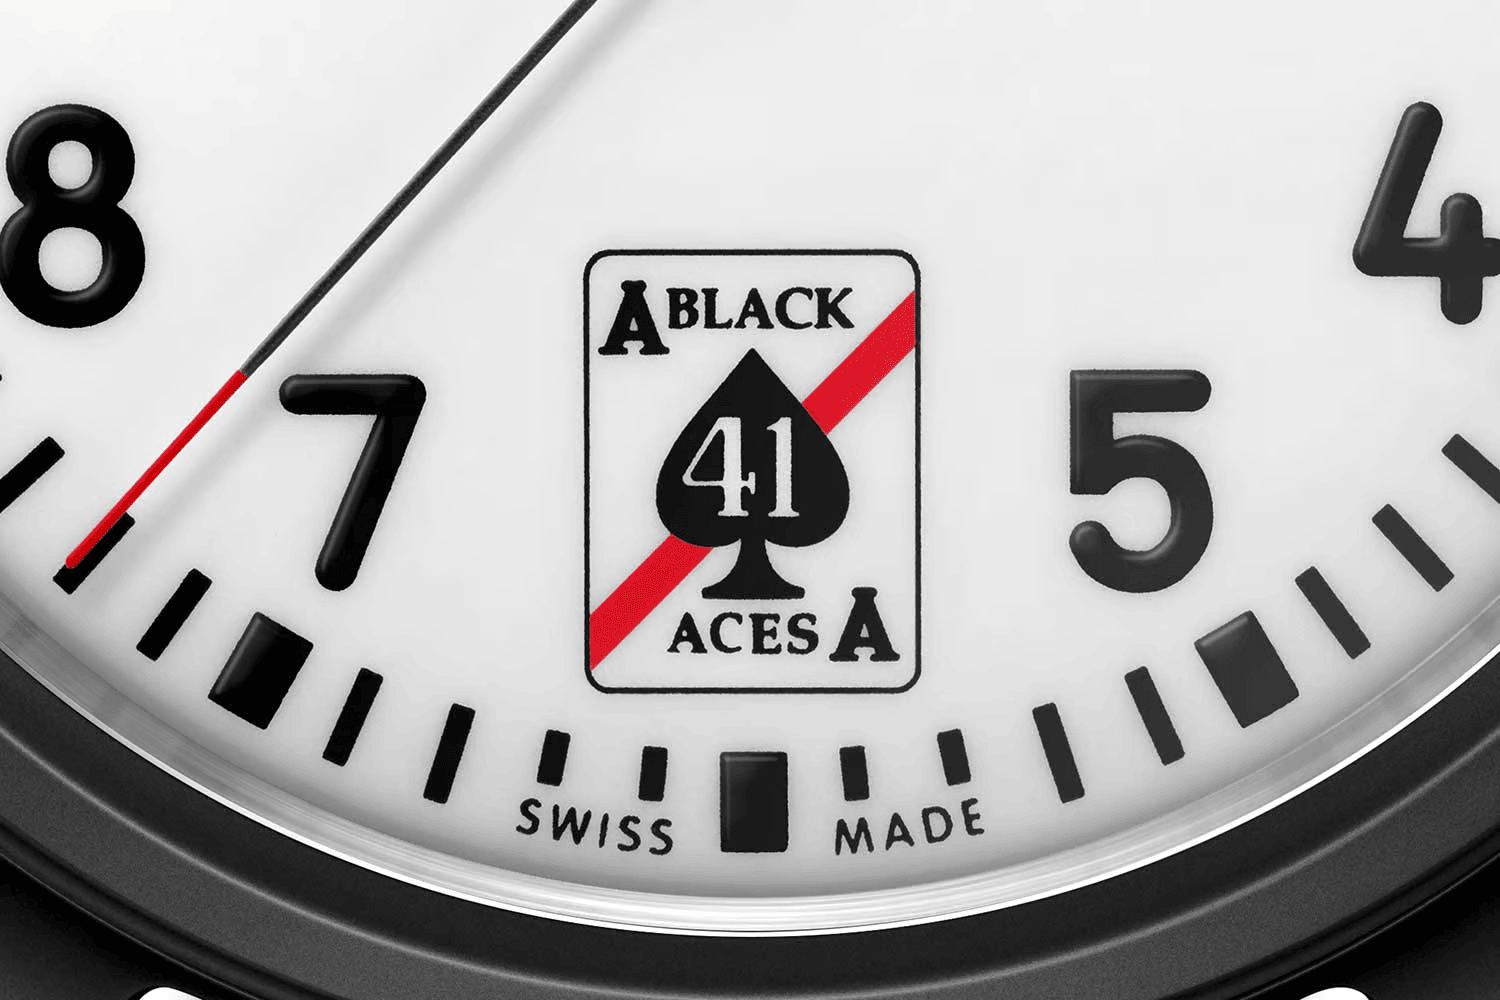 Đồng hồ phi công IWC 41 Black Aces